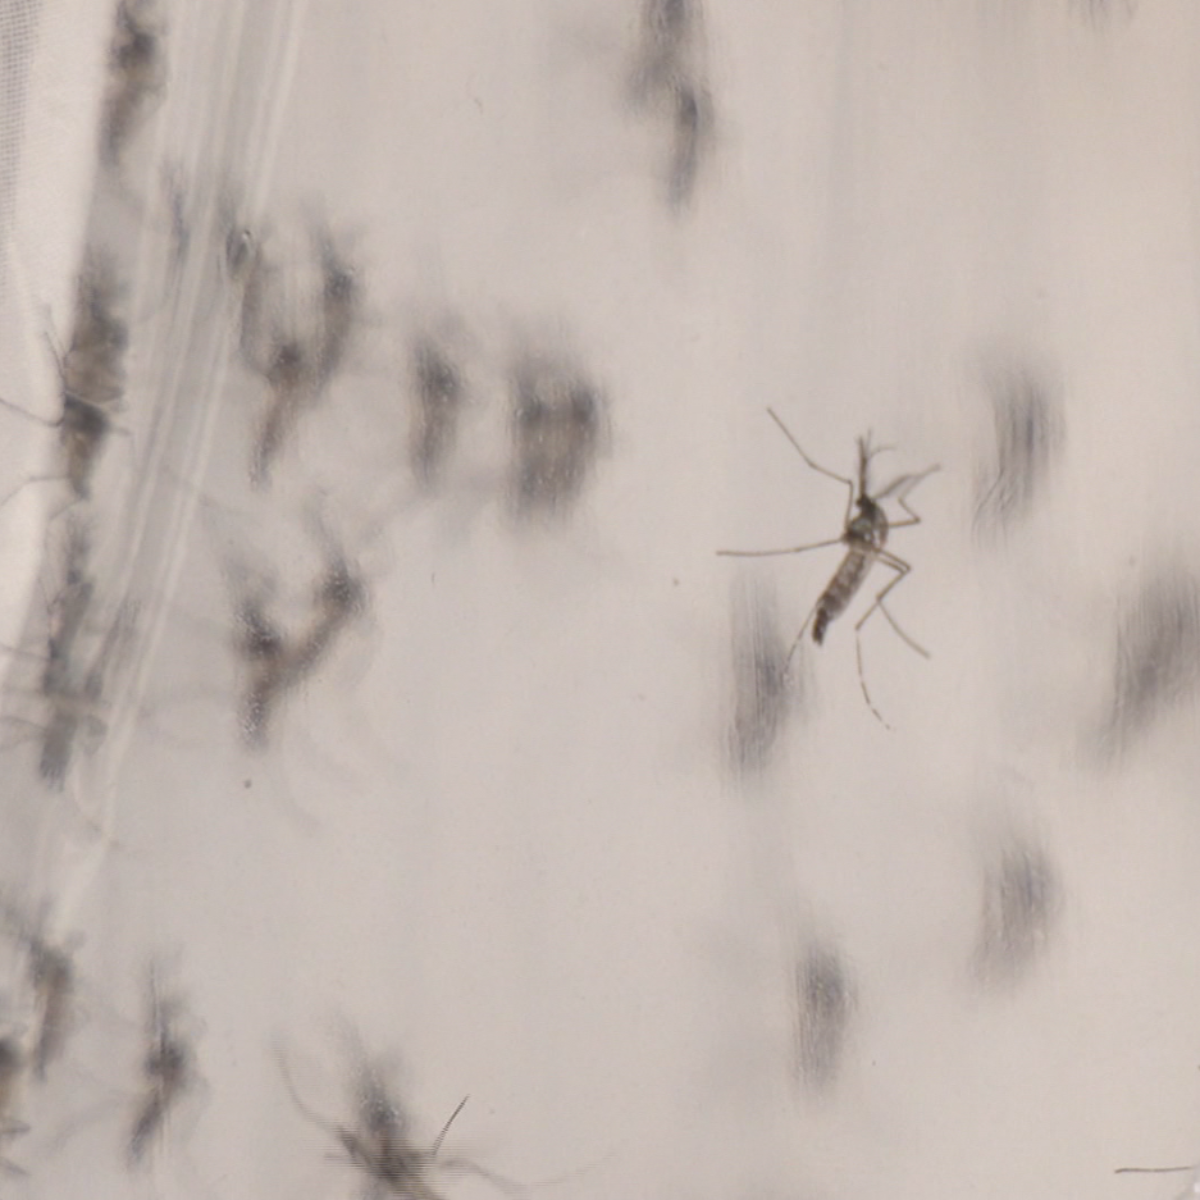  Mosquito da dengue. 